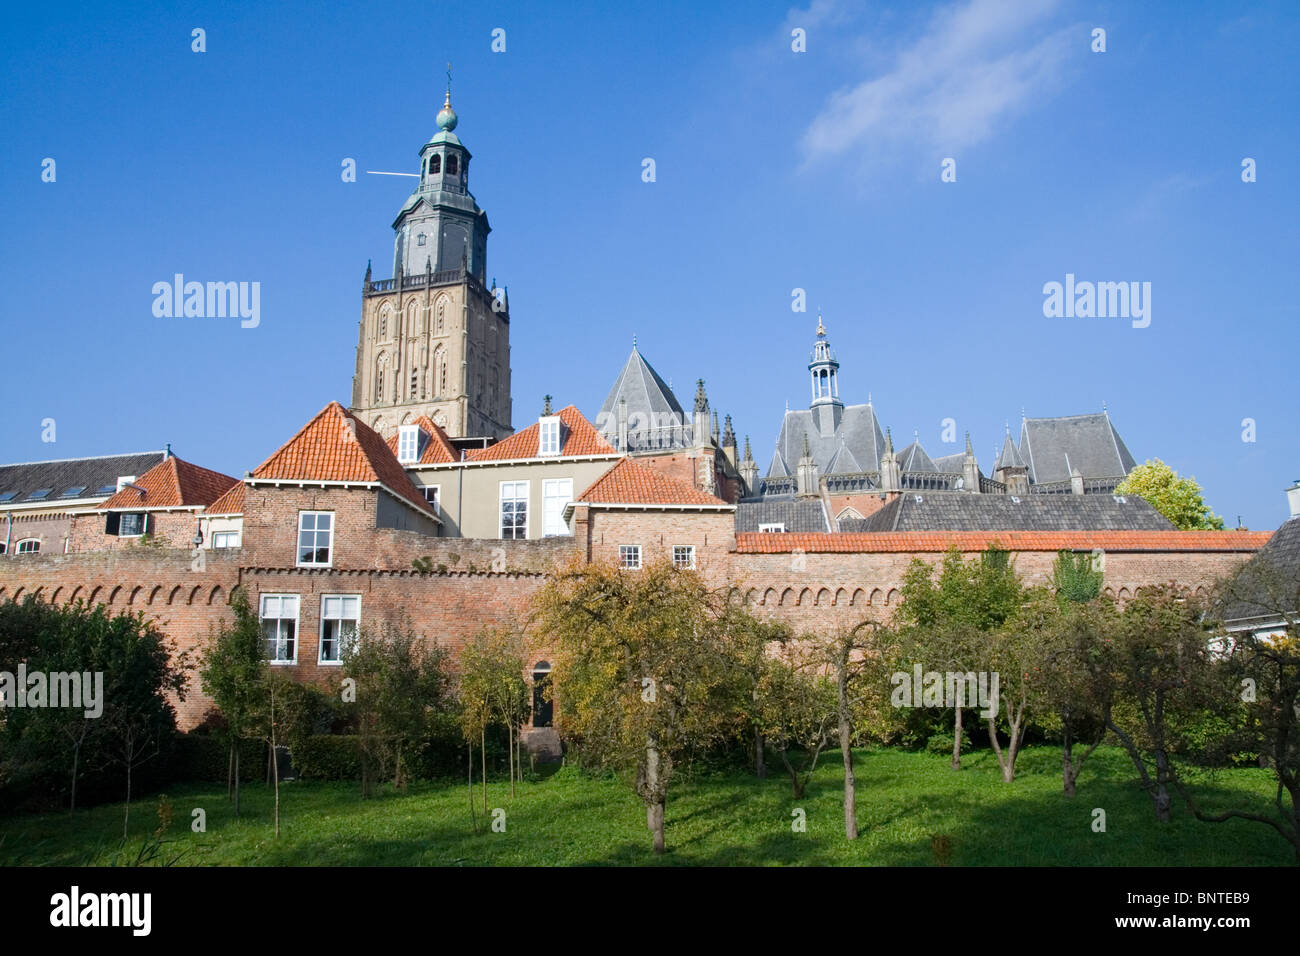 Dutch historical town Zutphen Stock Photo